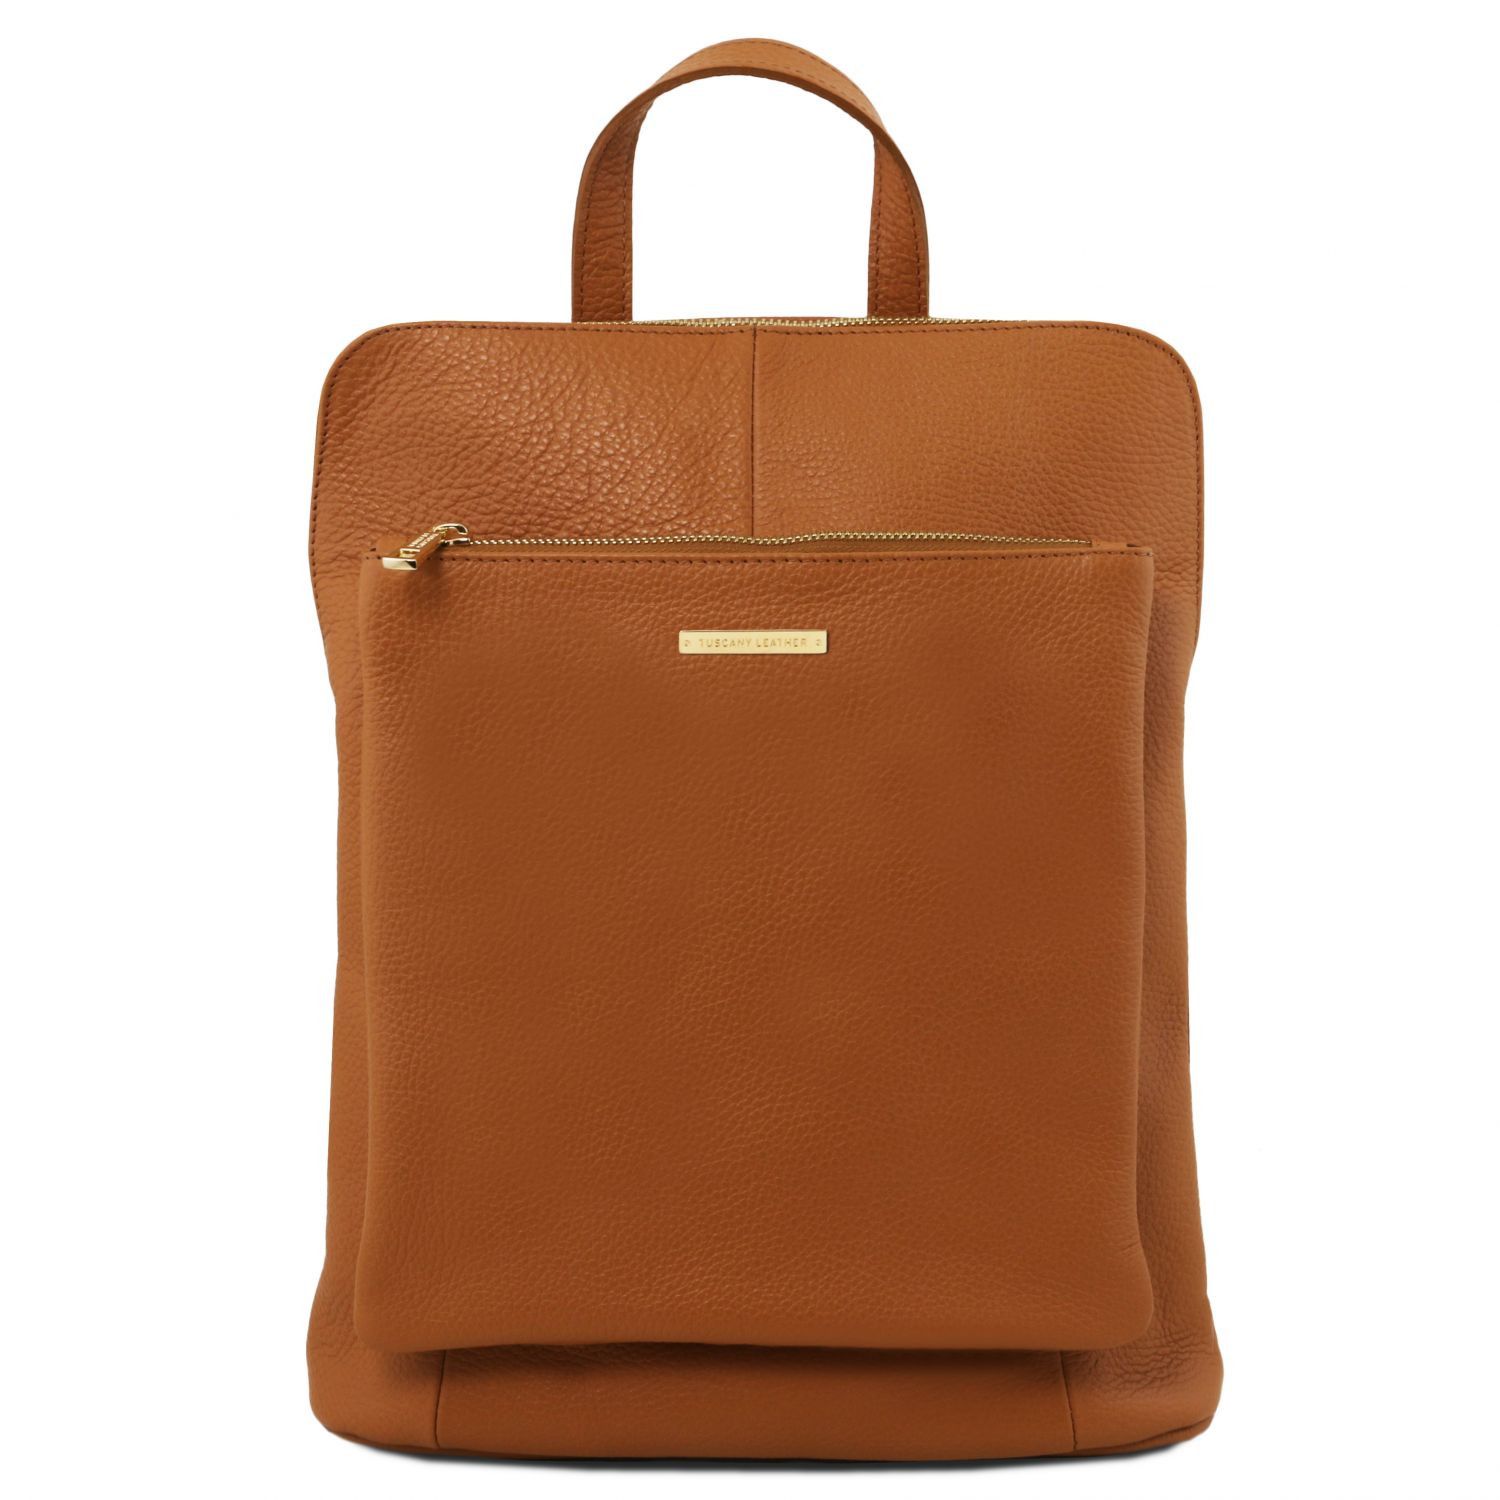 TL Bag - Sac à dos pour femme en cuir souple - Cognac (TL141682)